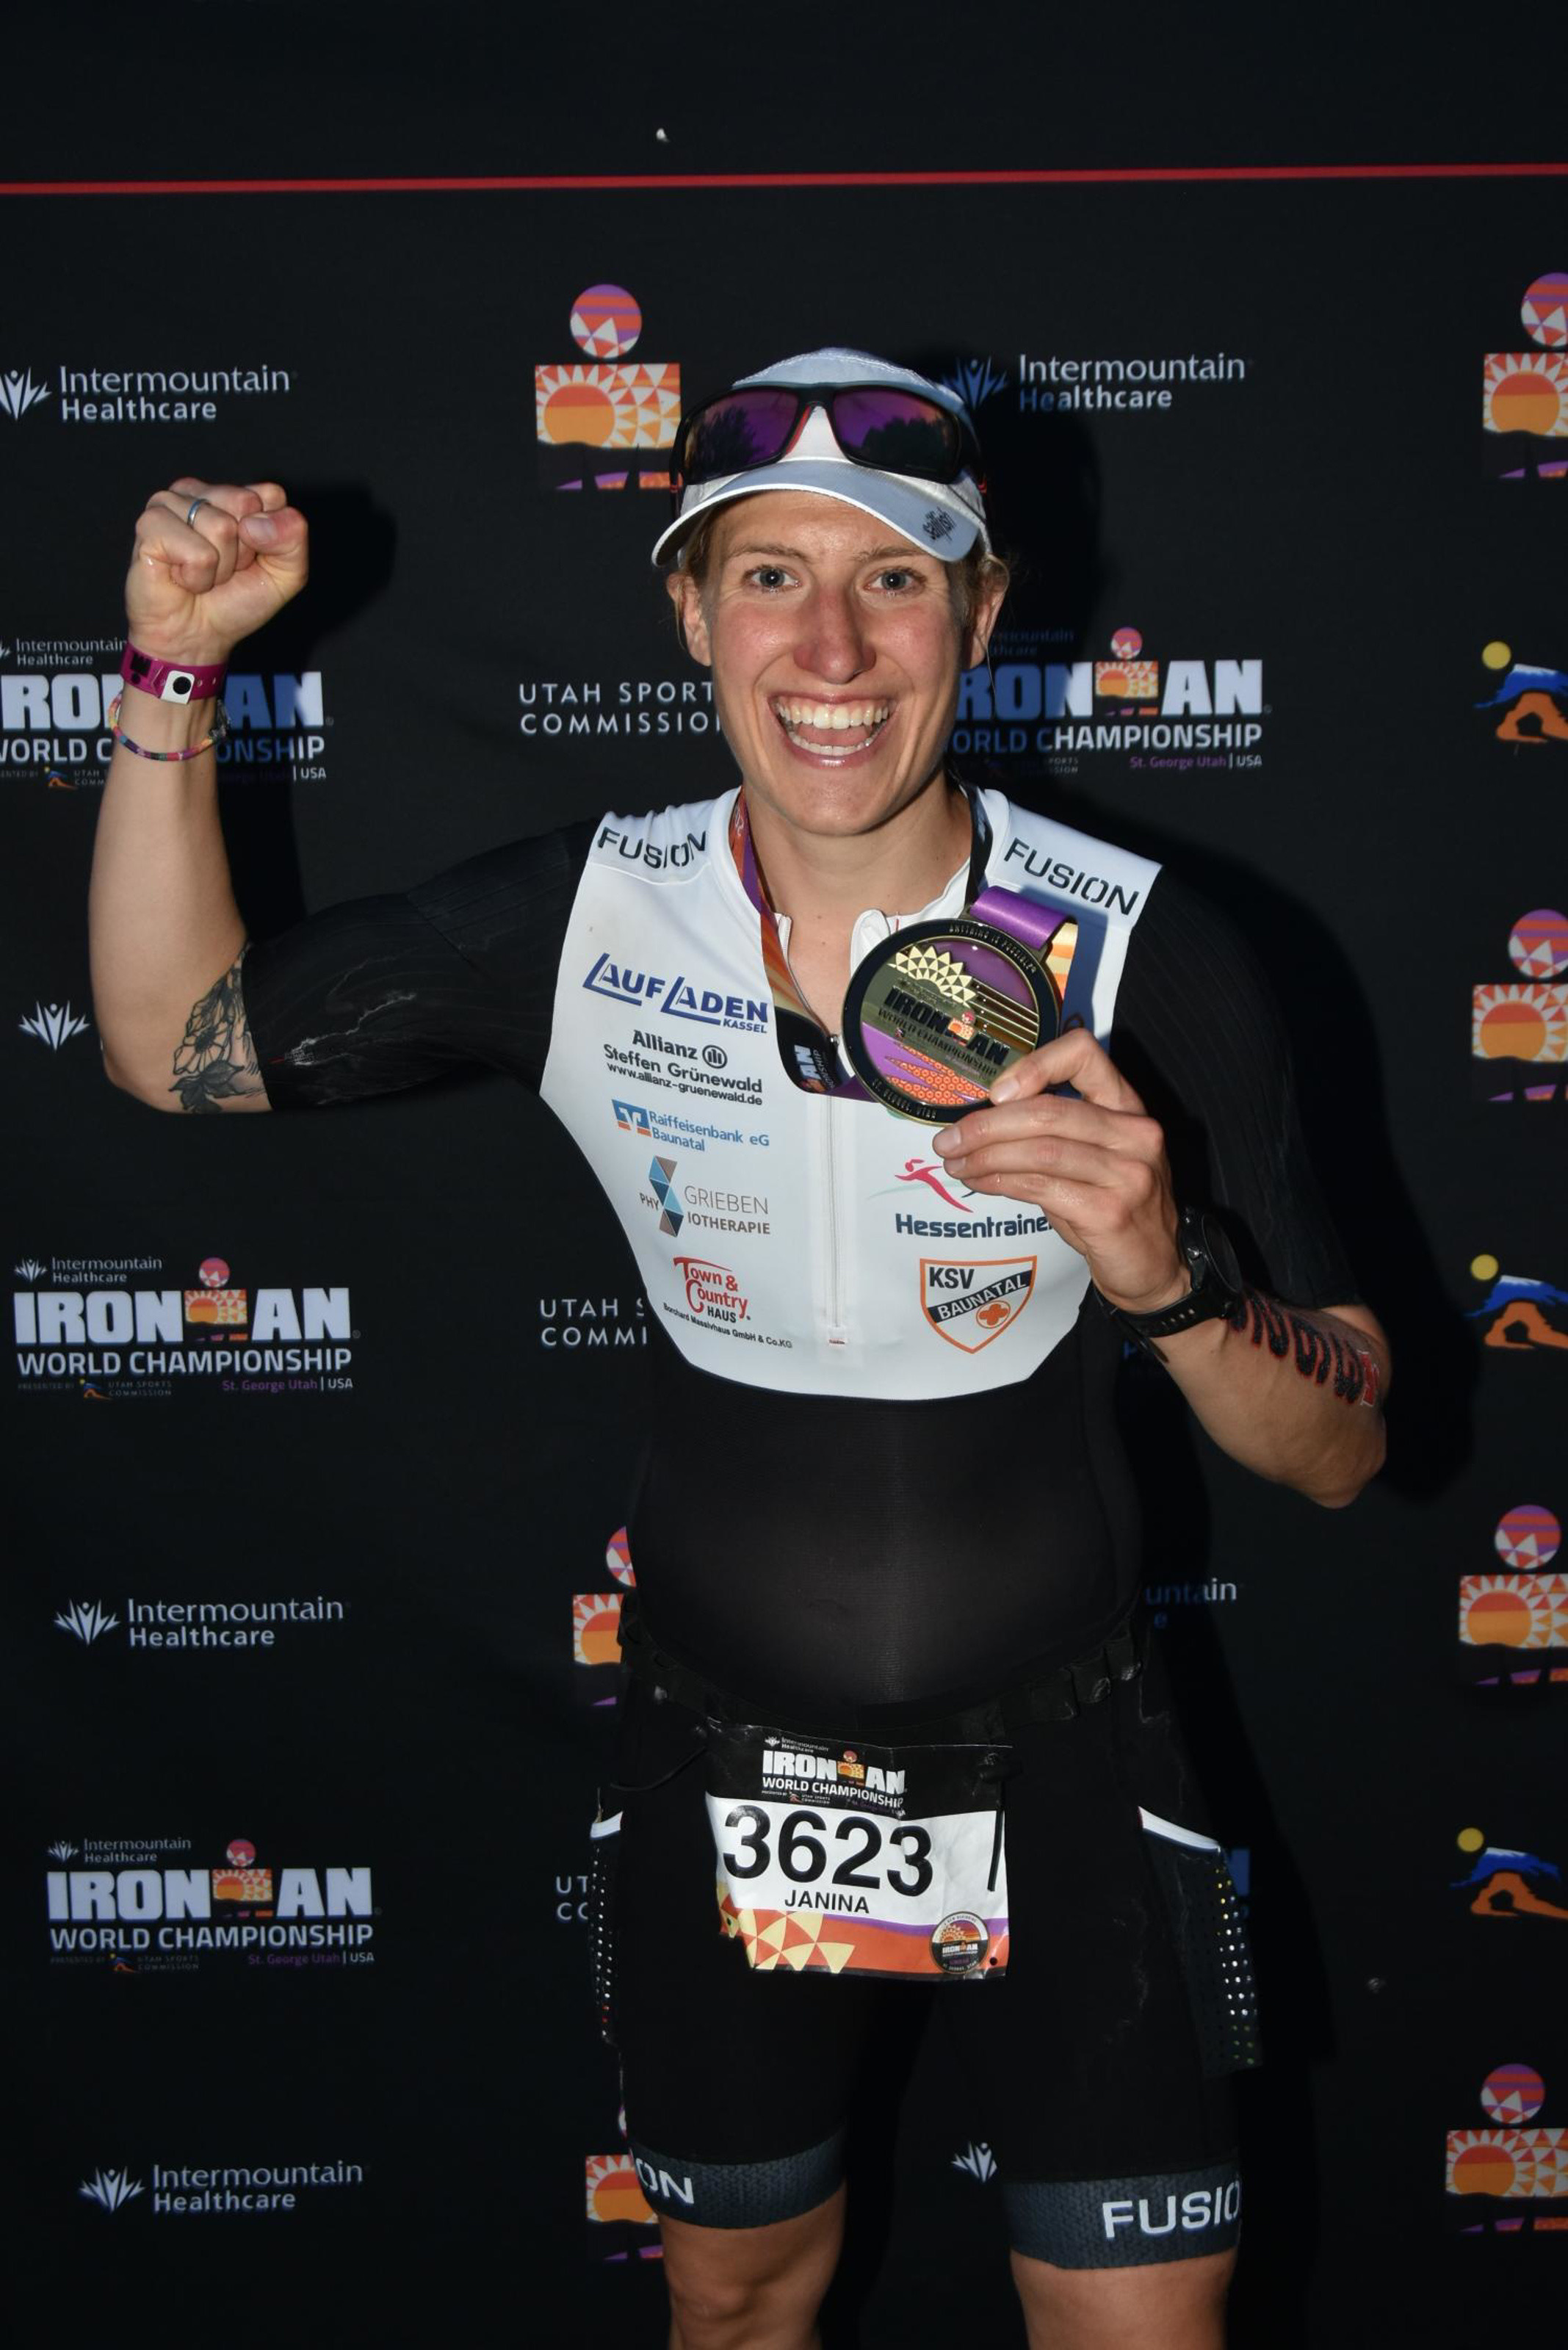 Die REBA IMMOBILIEN AG unterstützt als Sportsponsoring-Partner ab sofort die Triathletin Janina Rhode, die sich für die Teilnahme an der Ironman Weltmeisterschaft im Mai 2022 in St. George in Utah (USA) qualifiziert hat.